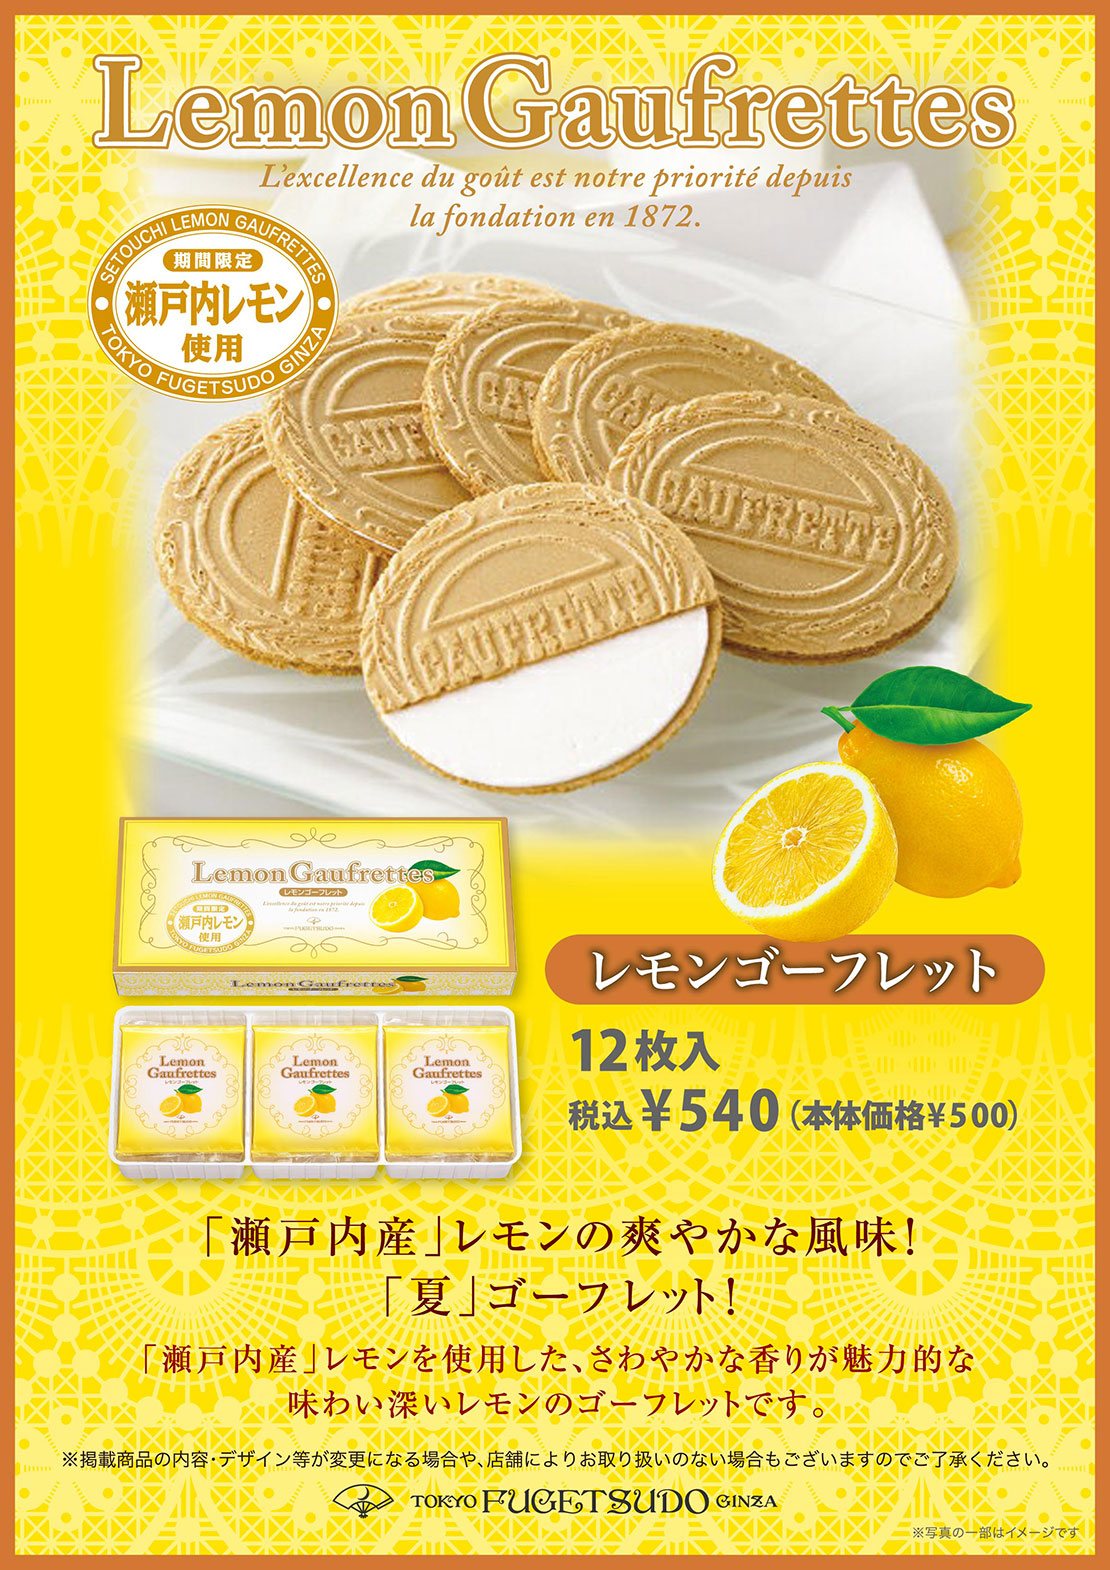 「瀬戸内産」レモンを使用した、芳醇な香りが魅力的な味わい深いレモンのゴーフレットです。レモンゴーフレット12枚入、税込￥540 (本体価格¥500)